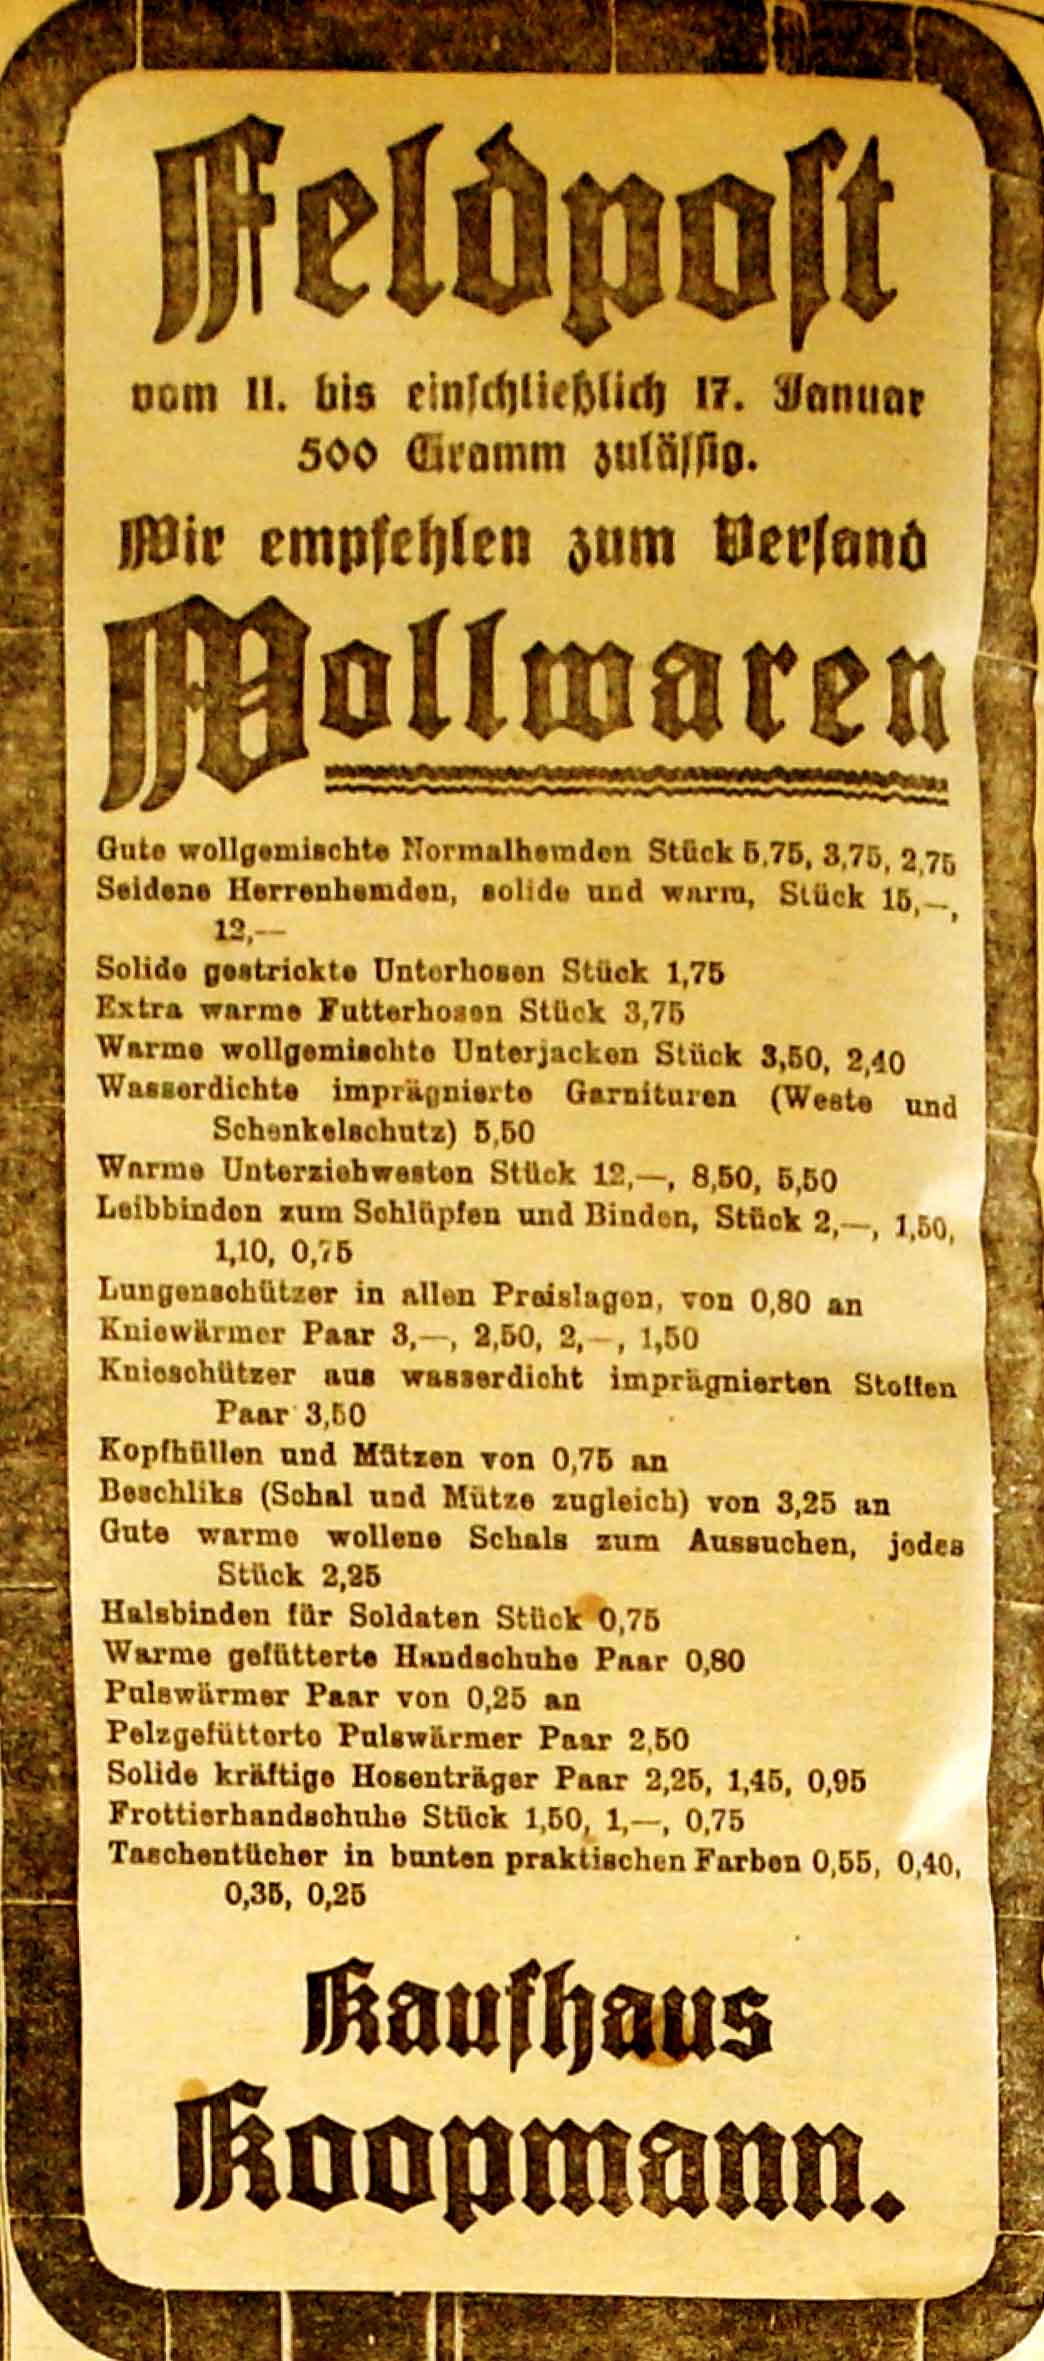 Anzeige in der Deutschen Reichs-Zeitung vom 11. Januar 1915